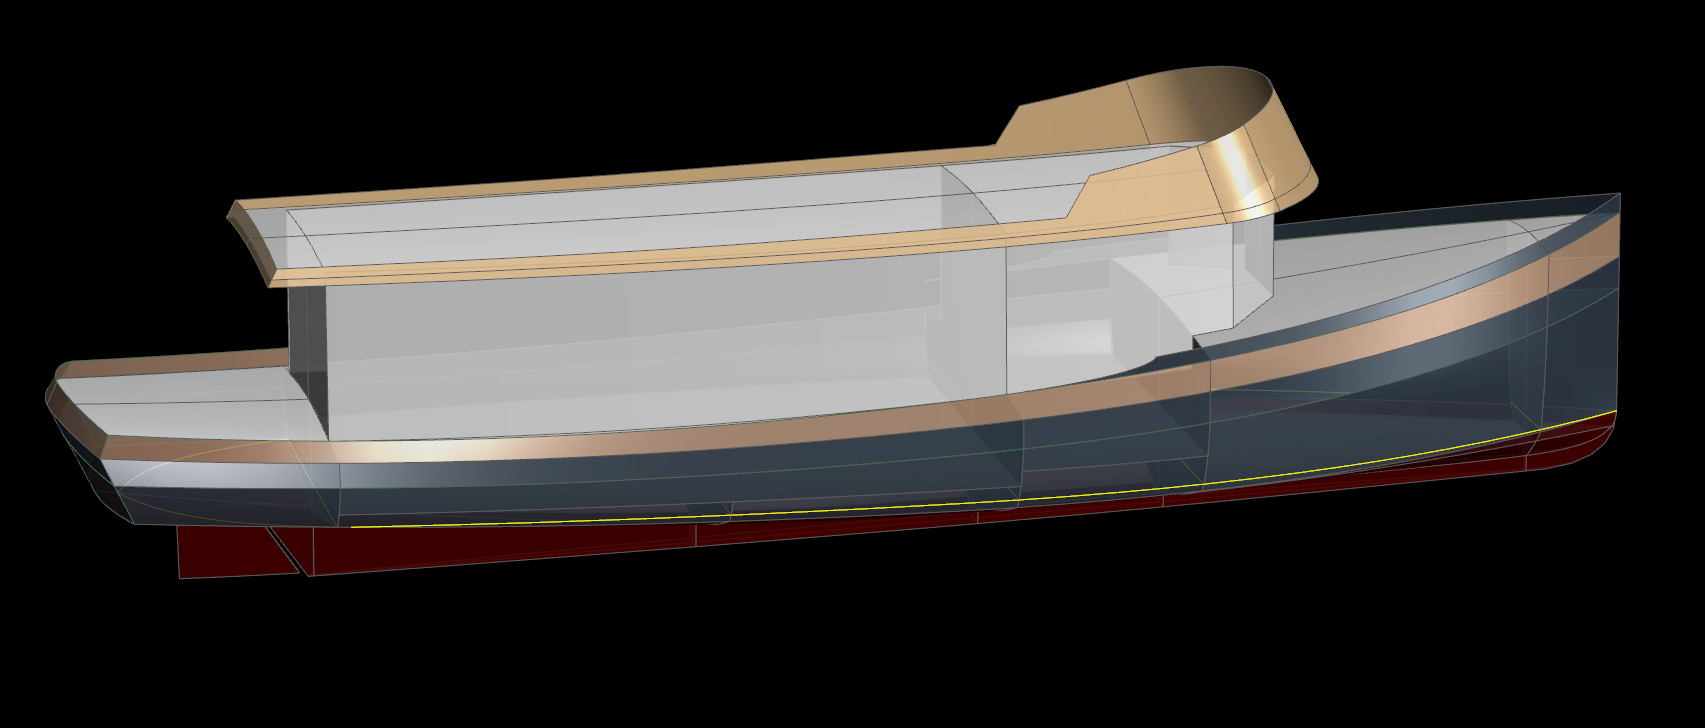 AMAZON - A 50' River Boat